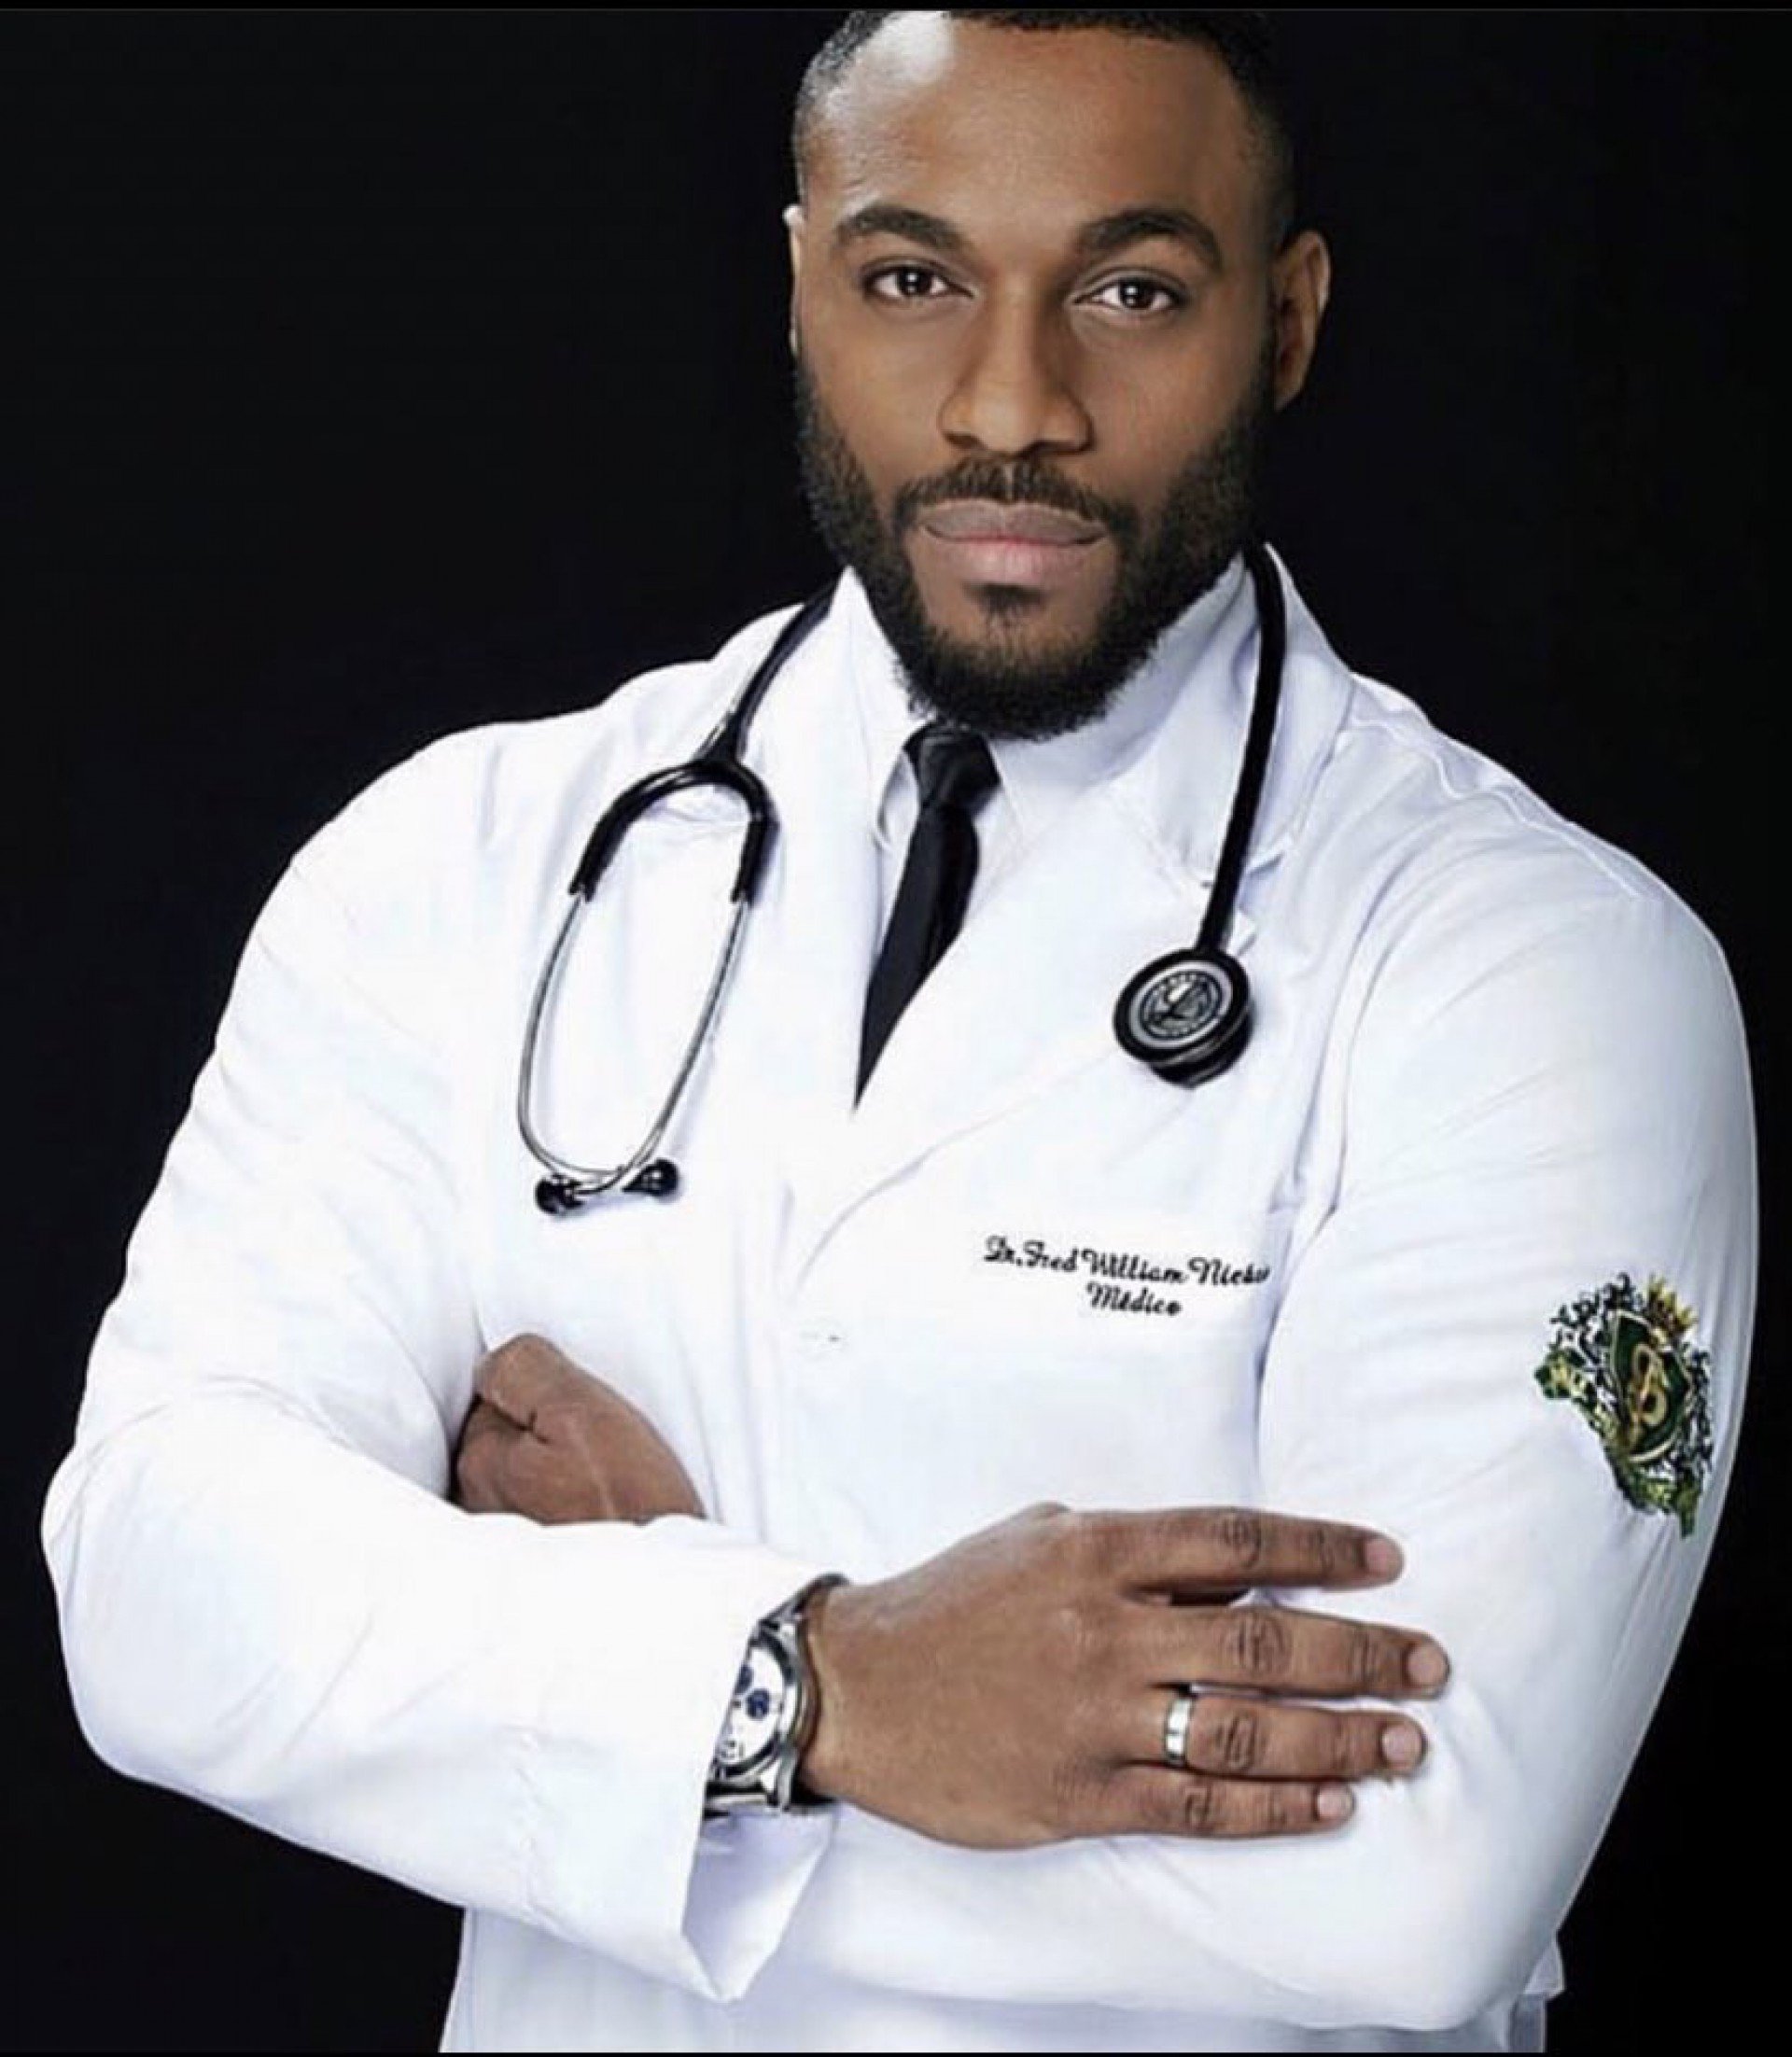 Doctor black. Чернокожий врач. Доктор Блэк. Черный врач. Доктор афроамериканец.